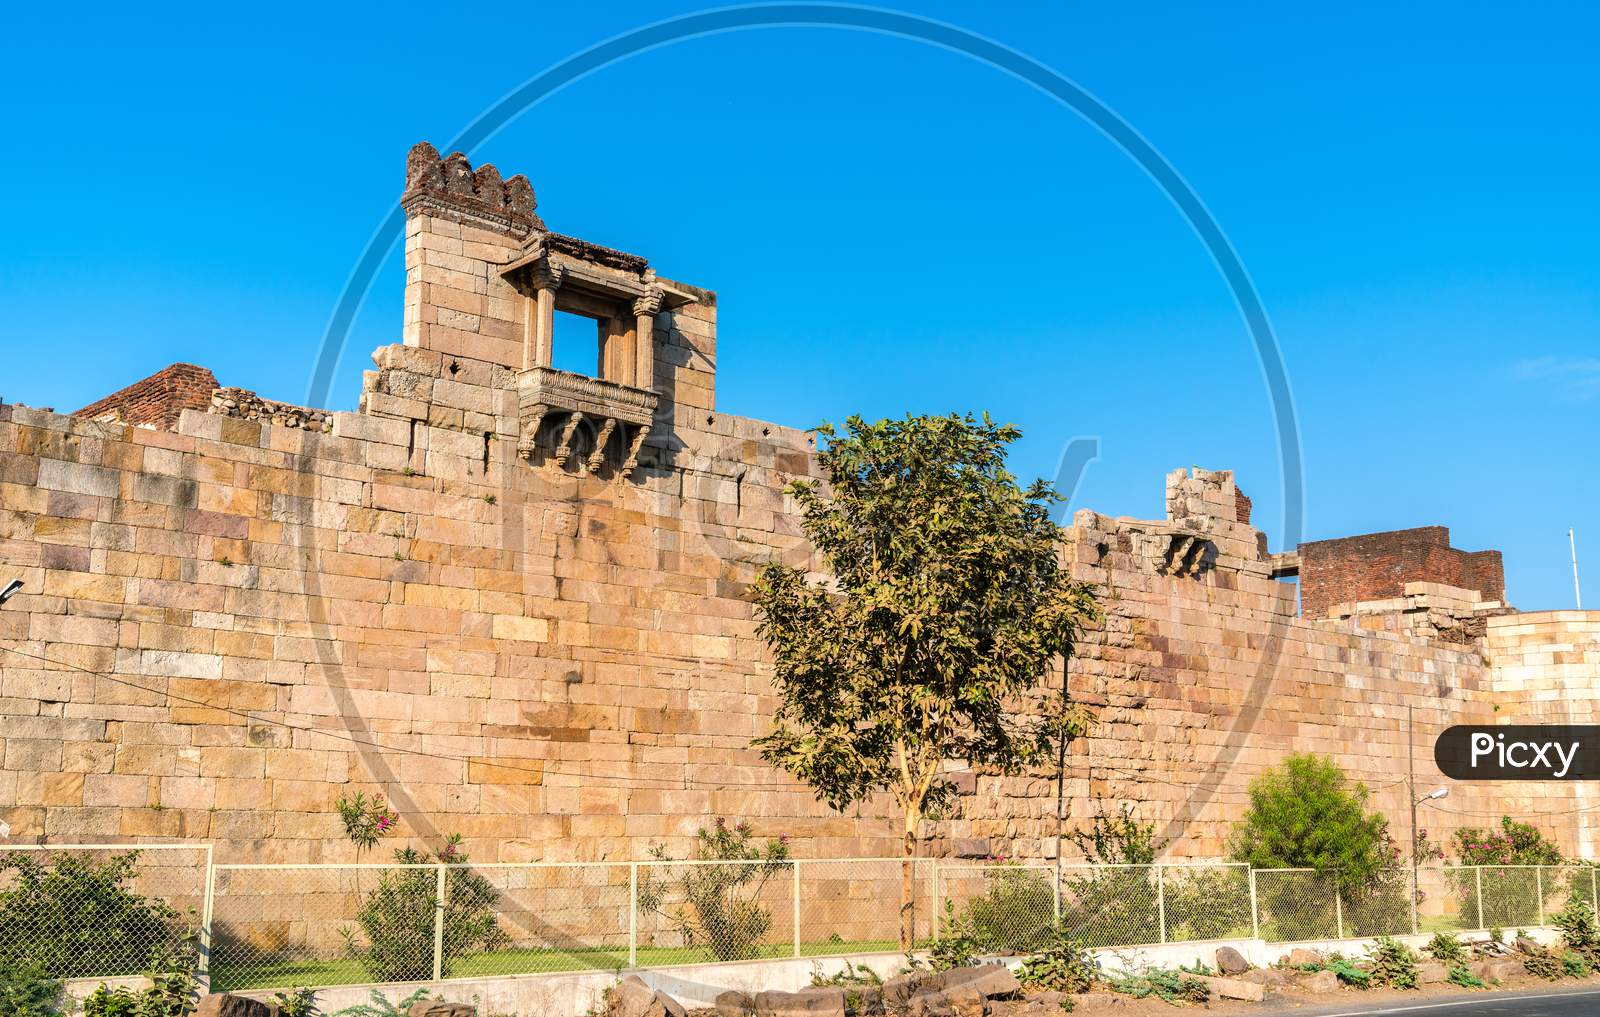 Walls Of Champaner Fort - Unesco Heritage Site In Gujarat, India